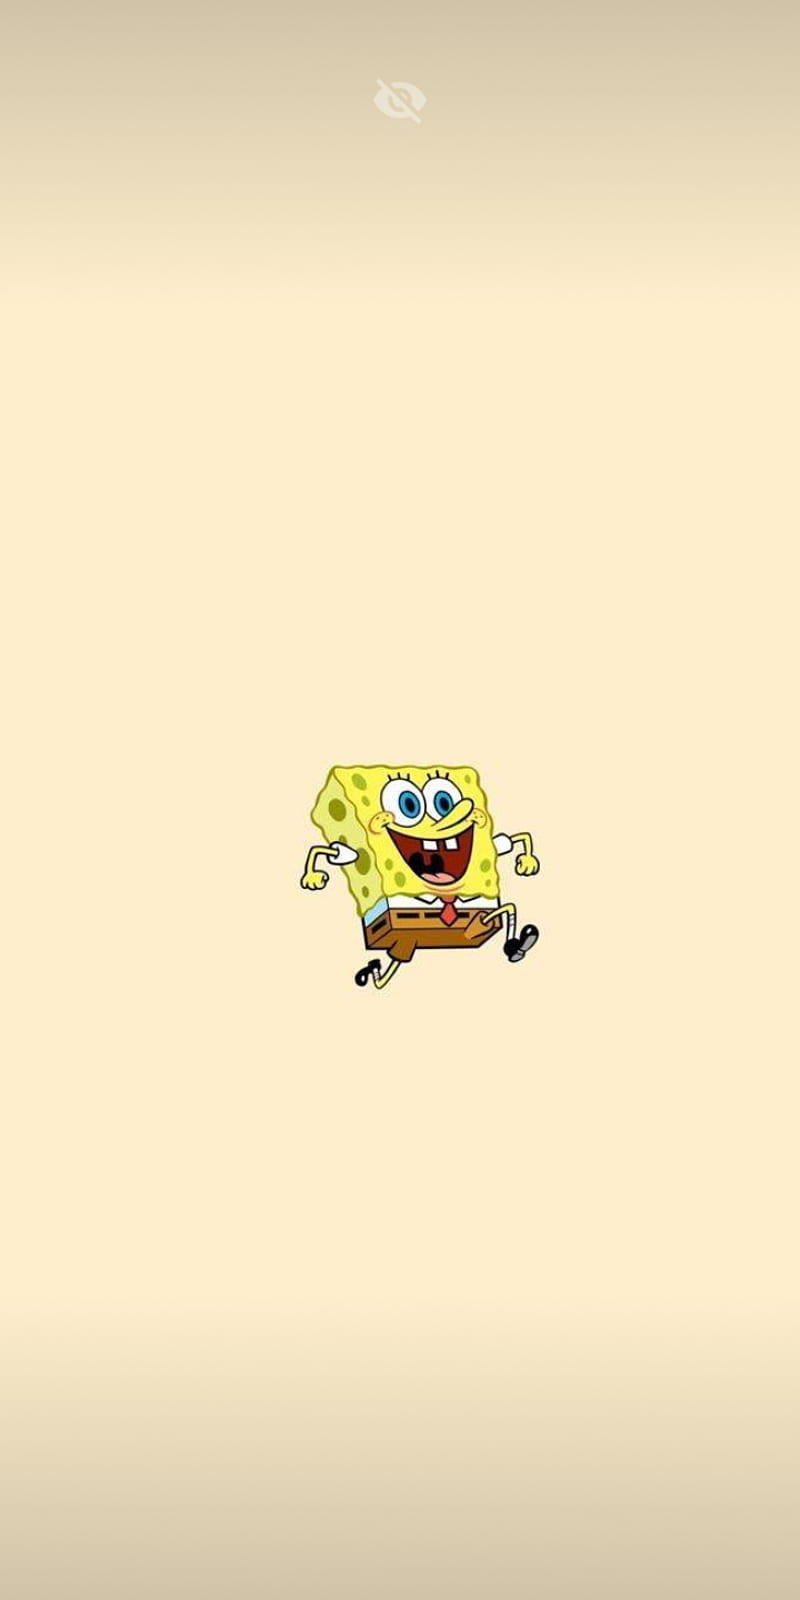 Hãy xem hình ảnh về Spongebob trên Cartoon Network để thưởng thức những giây phút vui nhộn và hài hước cùng nhân vật ưa thích của bạn!